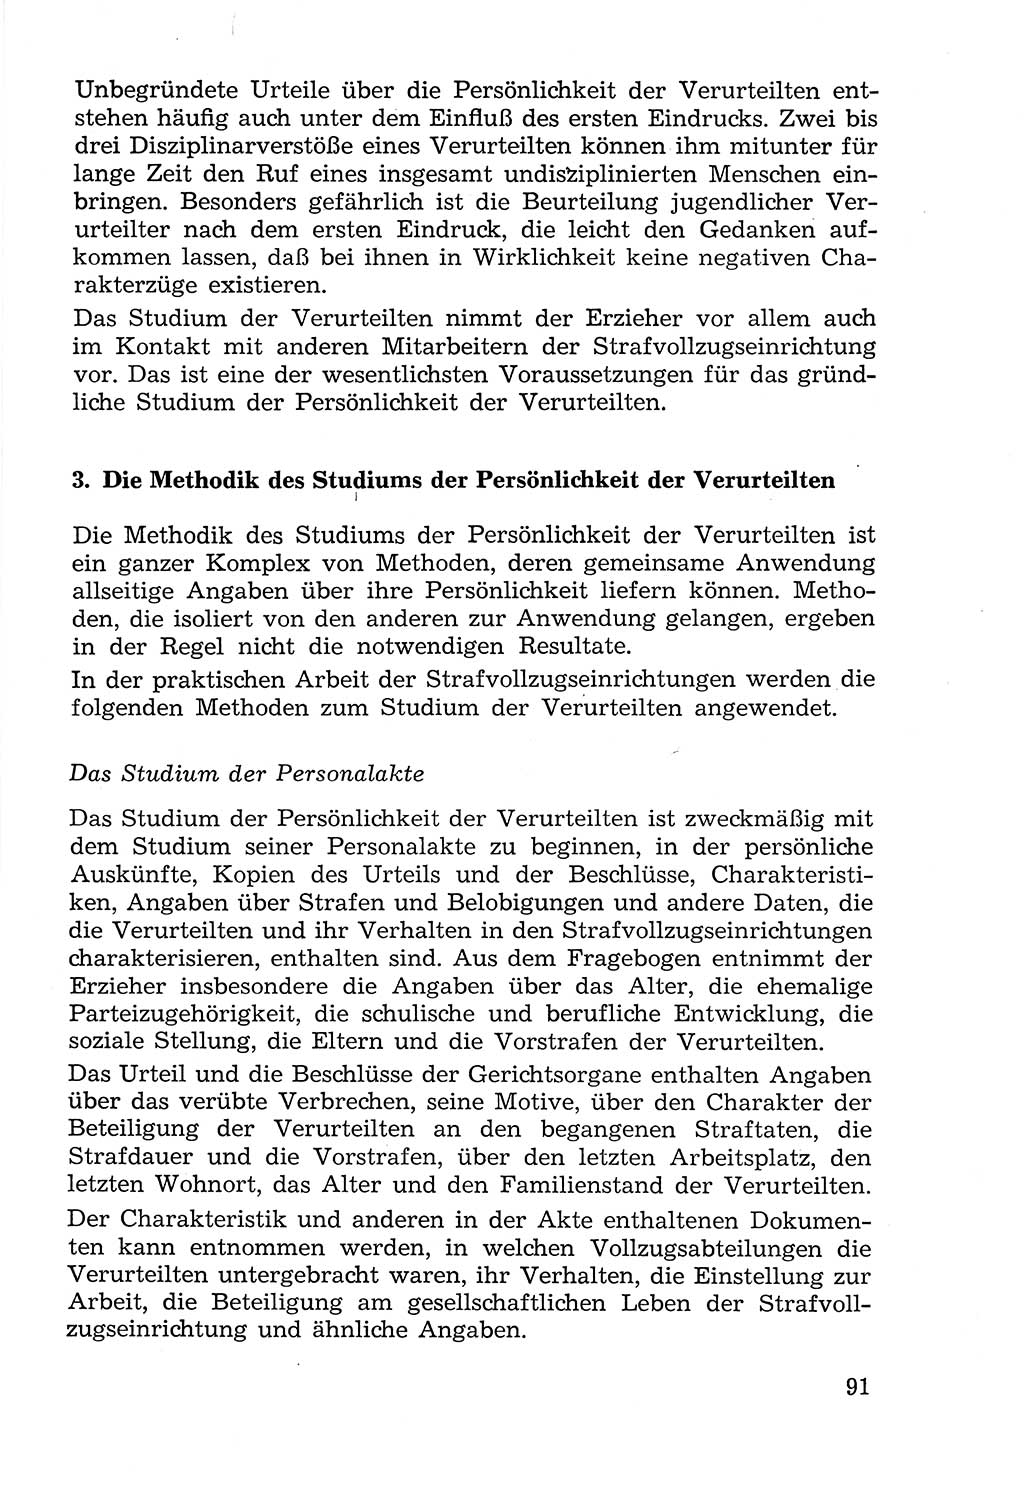 Lehrbuch der Strafvollzugspädagogik [Deutsche Demokratische Republik (DDR)] 1969, Seite 91 (Lb. SV-Pd. DDR 1969, S. 91)